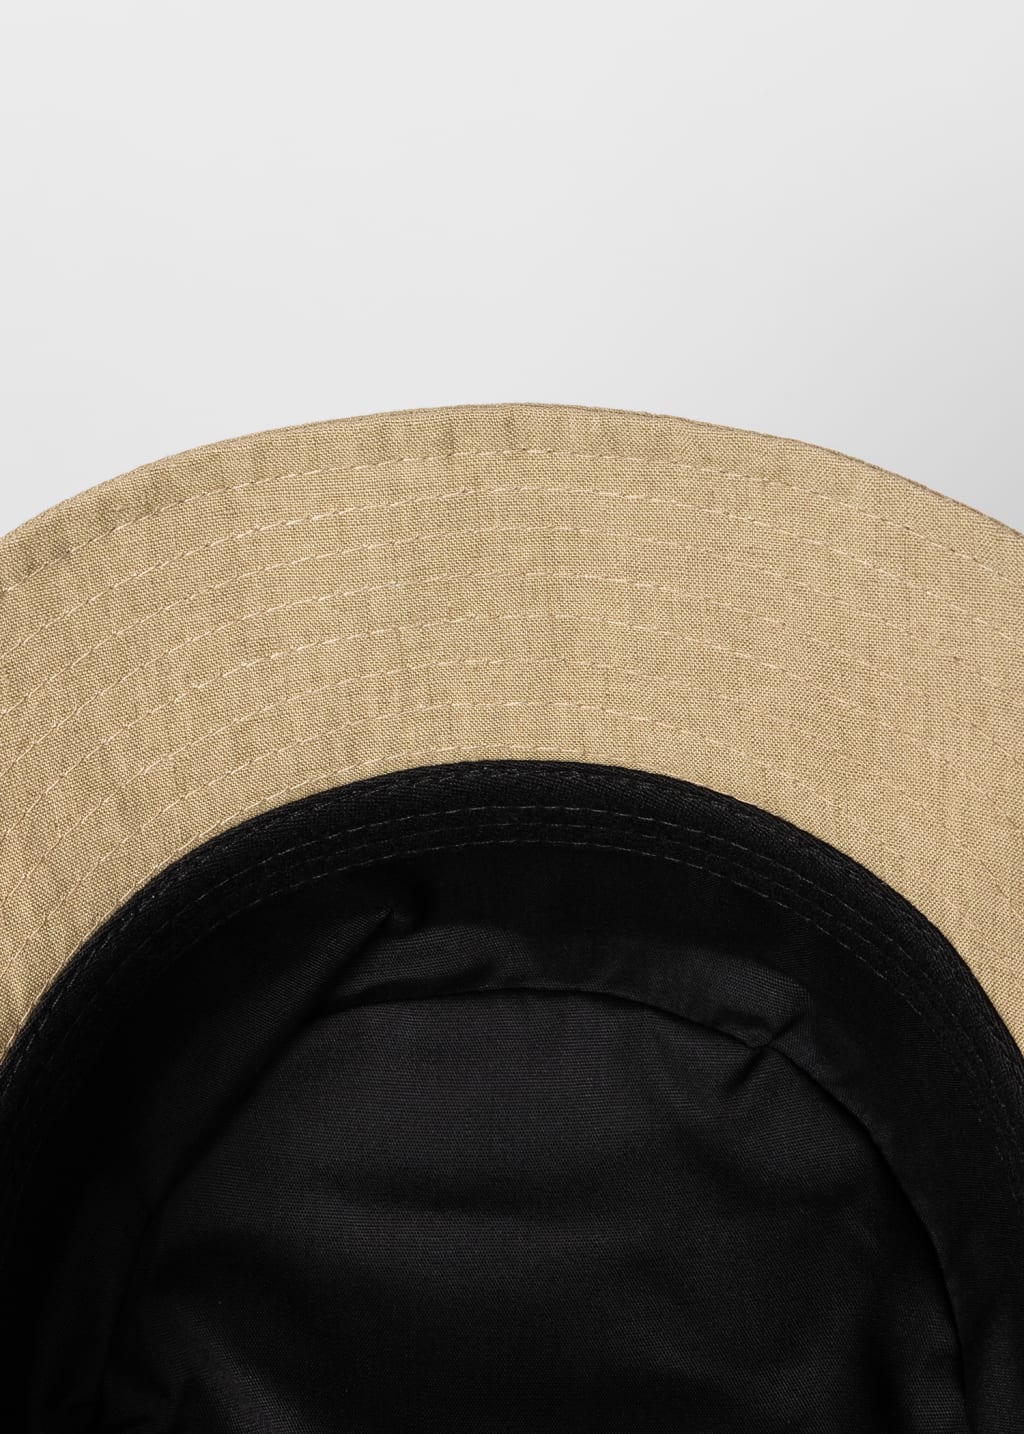 Detail View - Khaki Linen 'Signature Stripe' Trim Bucket Hat Paul Smith